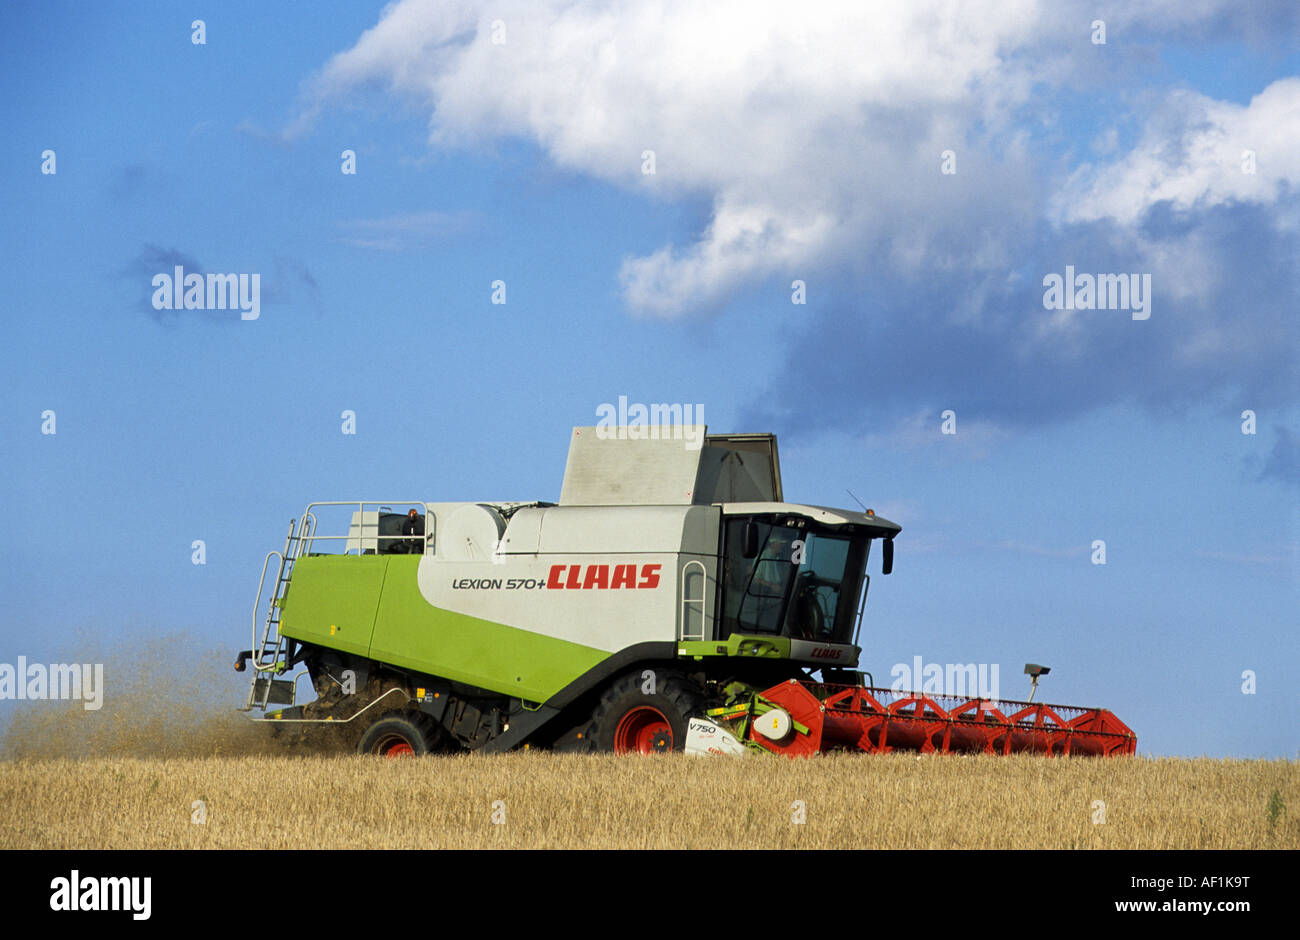 Claas mietitrebbia il taglio del frumento su terreno coltivato nei pressi di Snape, Suffolk, Regno Unito. Foto Stock